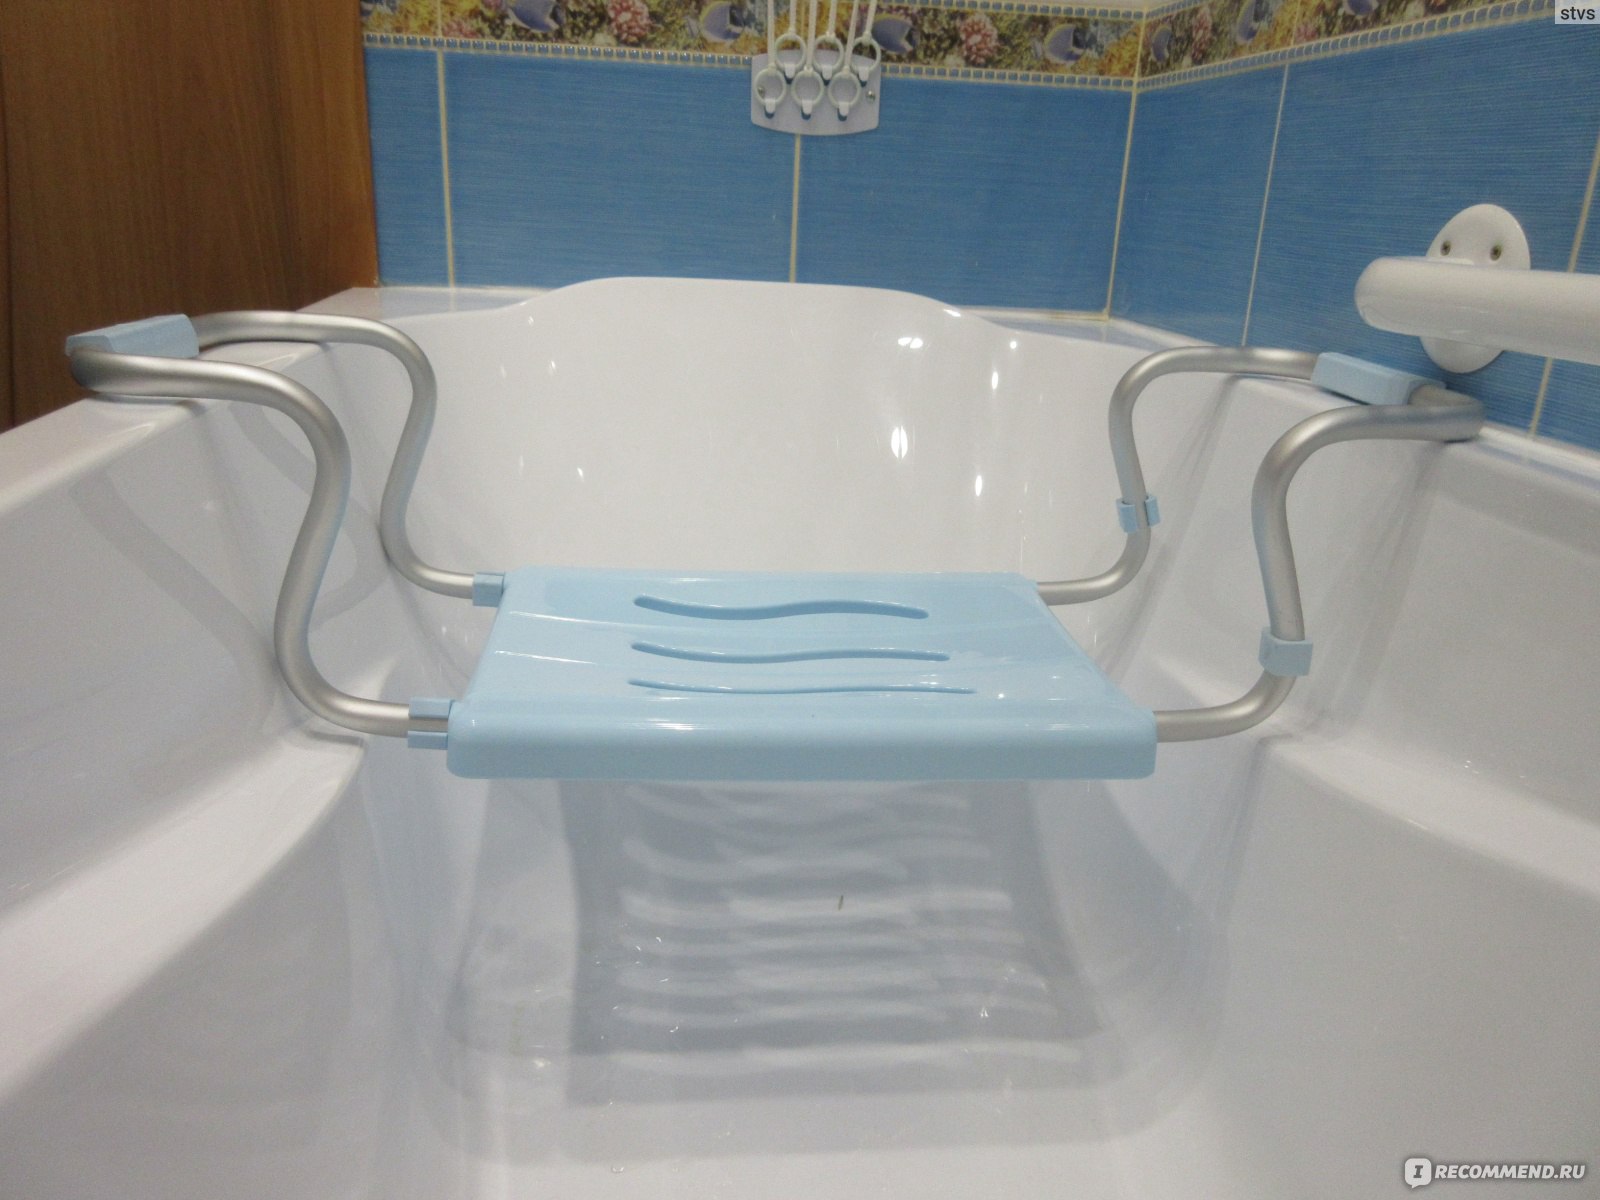 Сиденье для ванны для инвалидов купить в Москве по низкой цене - интернет-магазин natali-fashion.ru